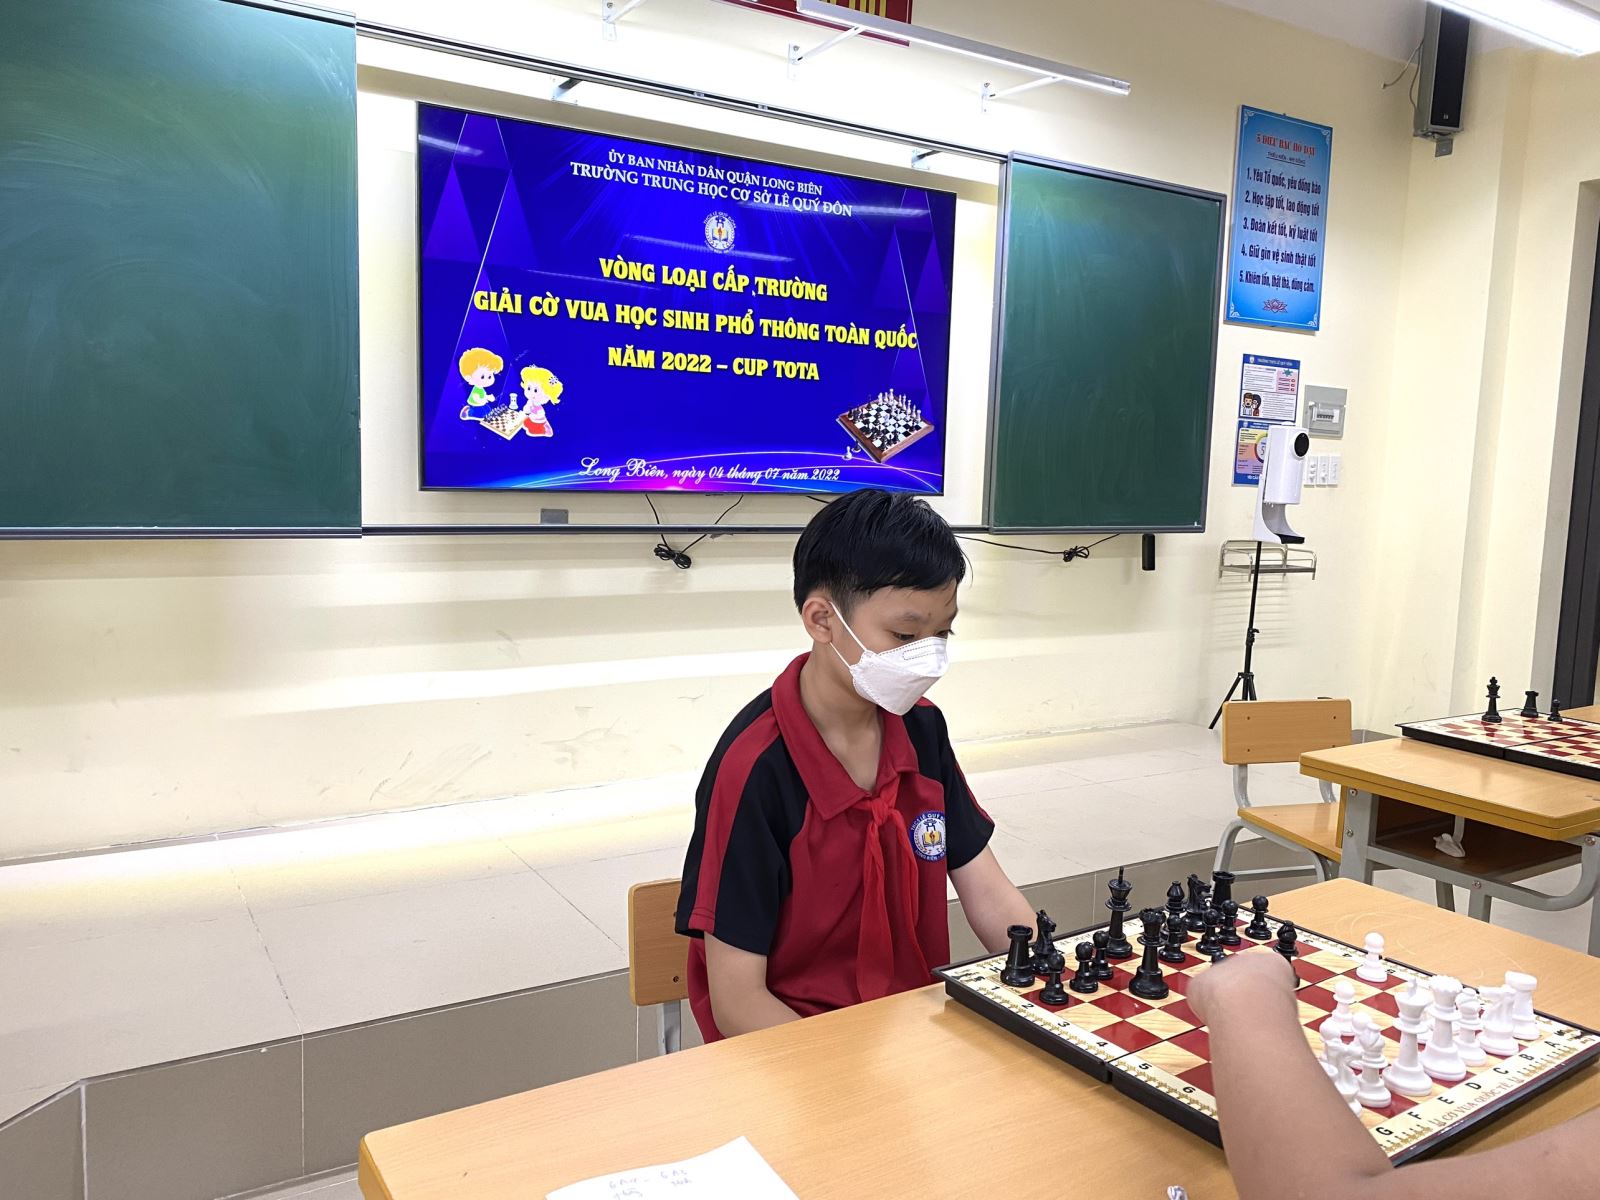 Giải cờ vua học sinh phổ thông năm 2022